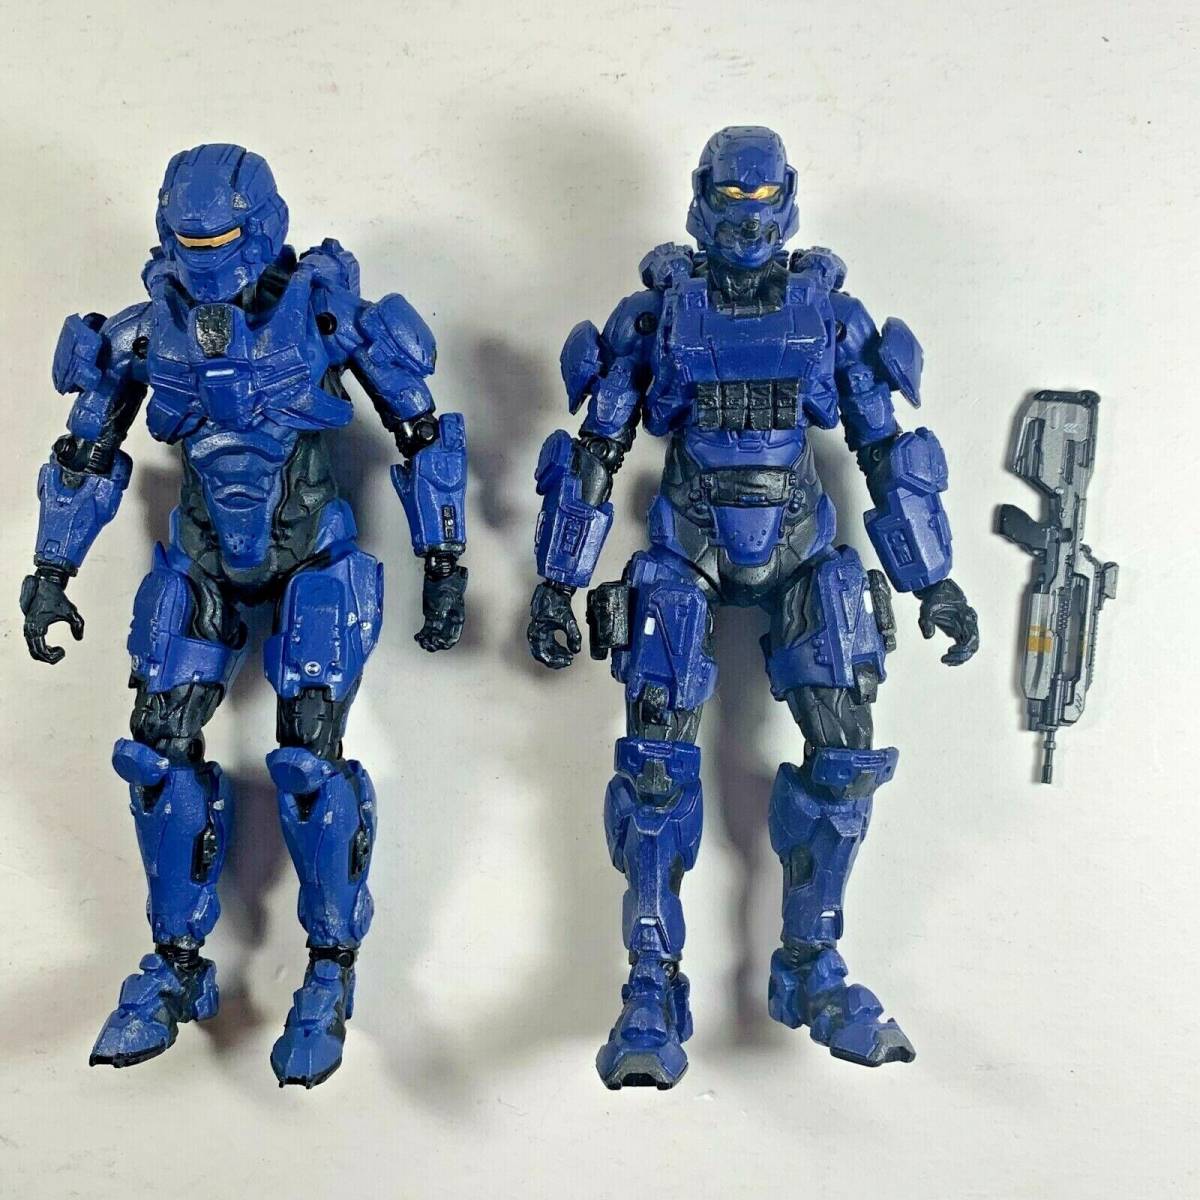 Halo 4 - Blue Spartan Soldier, Blue Spartan Warrior - Series 1 - McFarlane 海外 即決